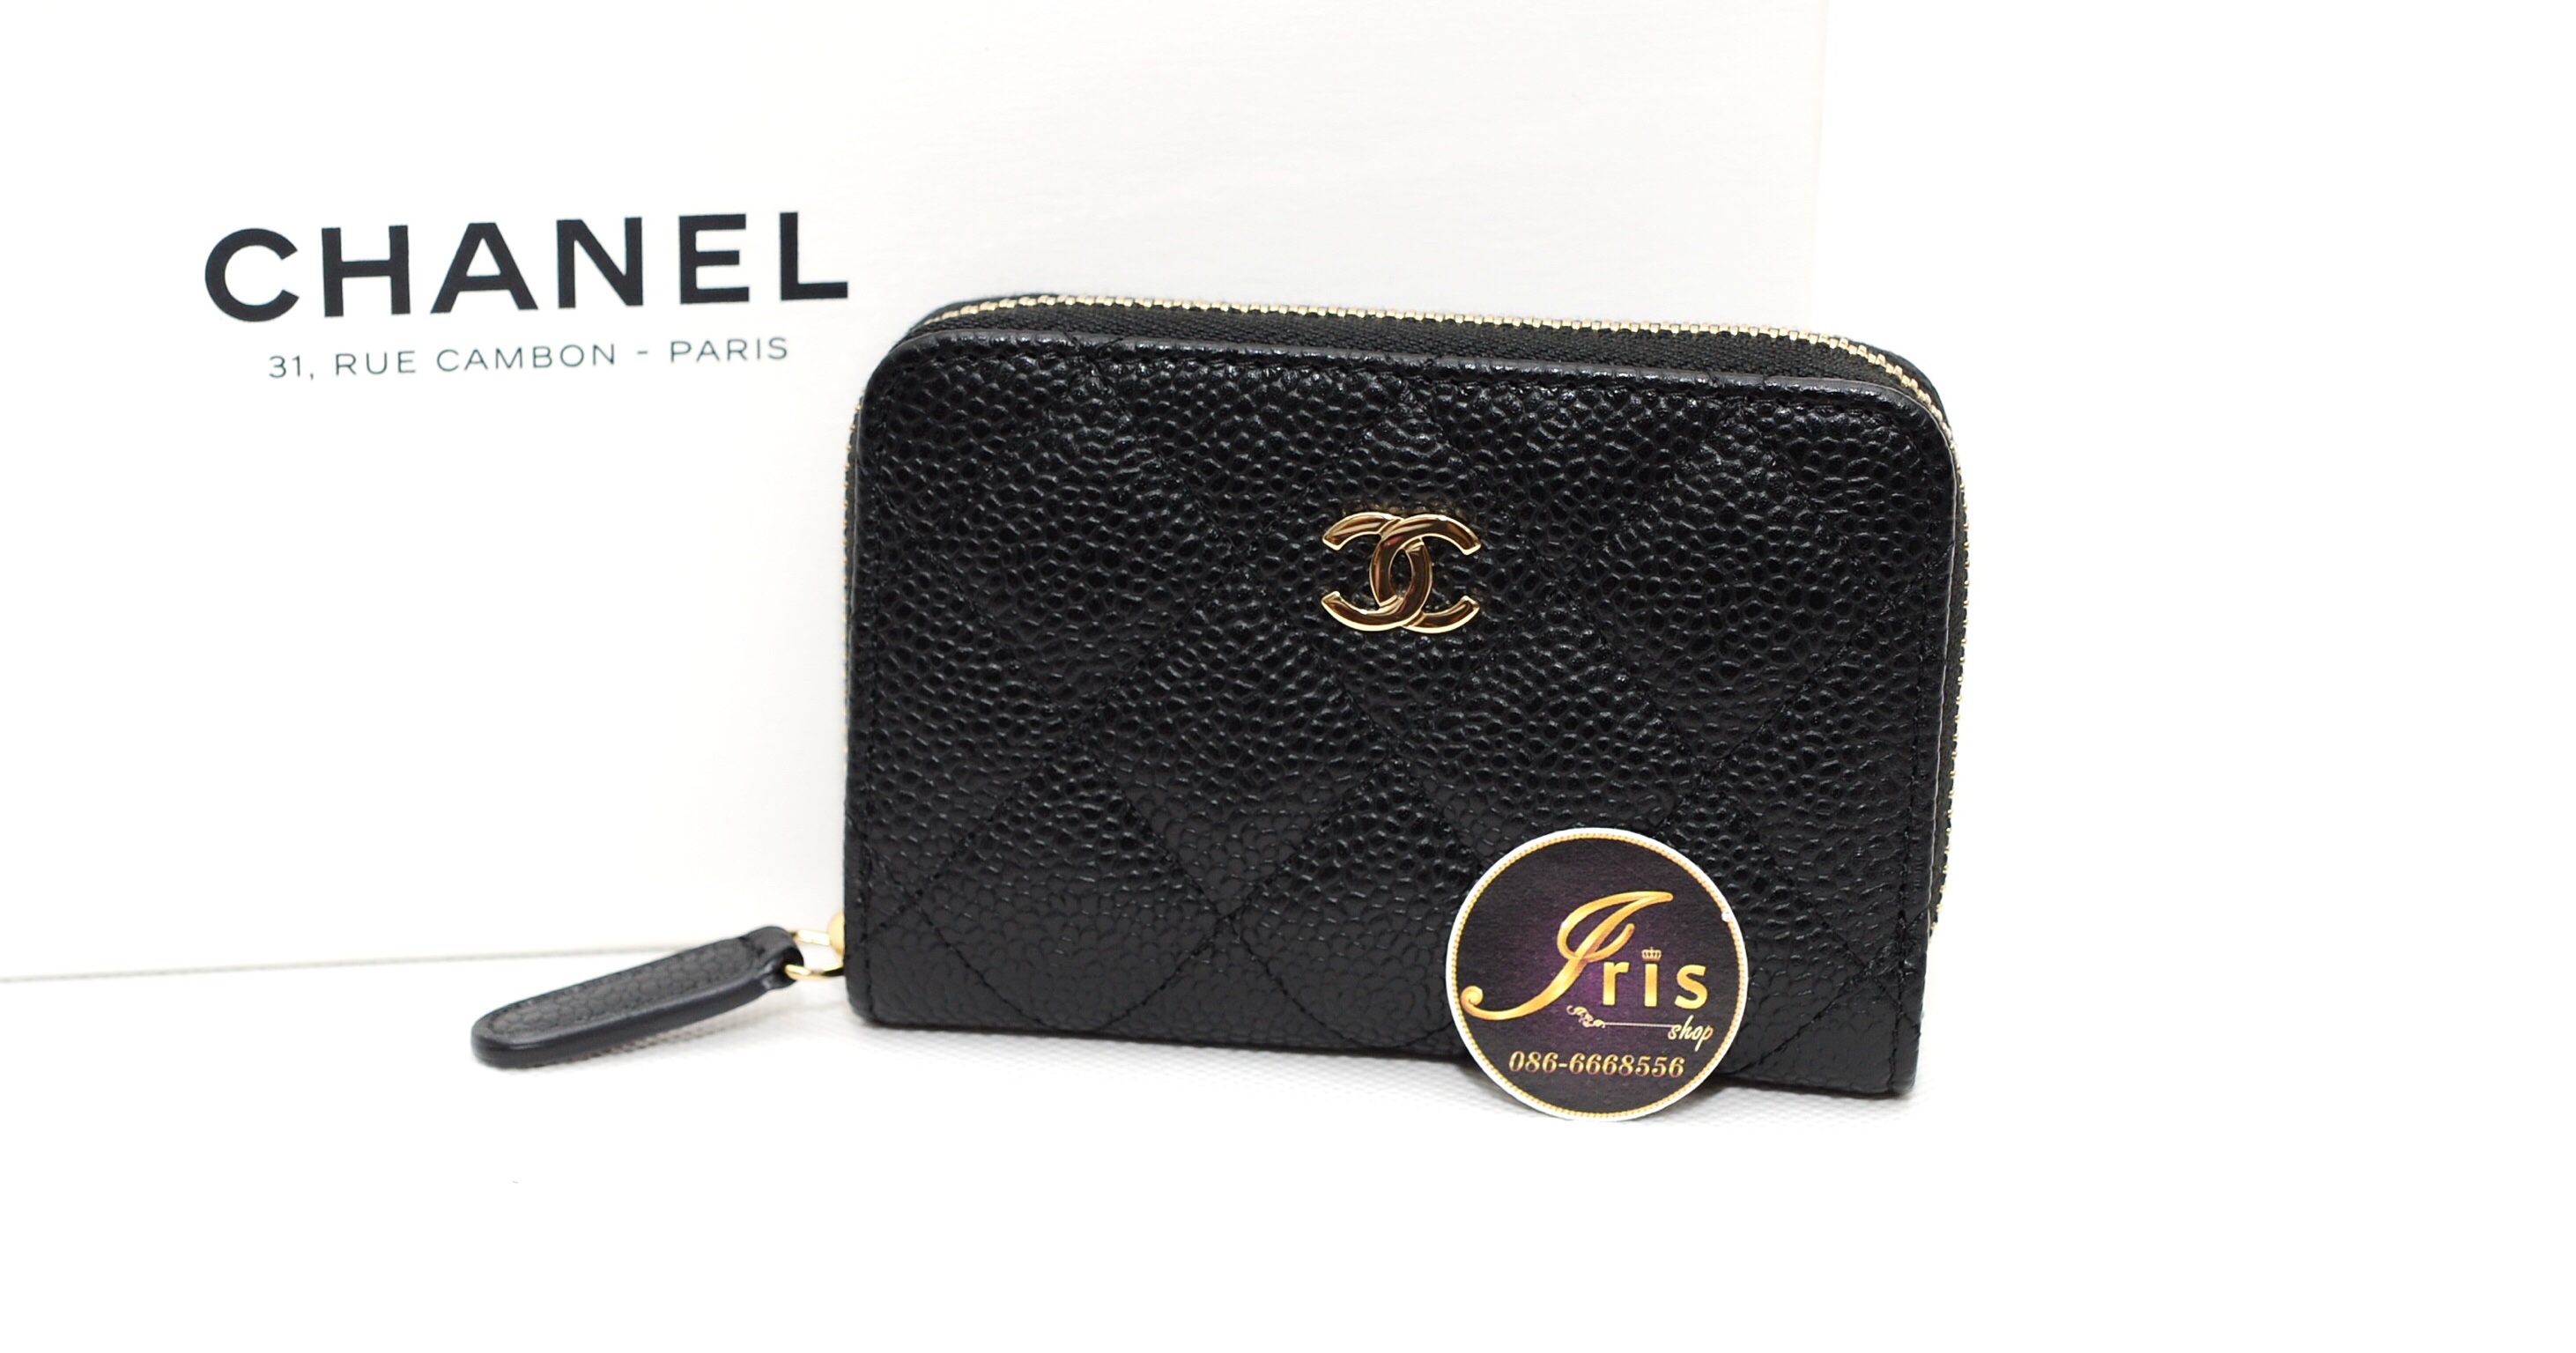 กระเป๋าเงิน Chanel zippy coin wallet in Black GHW 4.2” สีดำ อะไหล่ทอง สวย ใช้งานสะดวก ของใหม่ ...